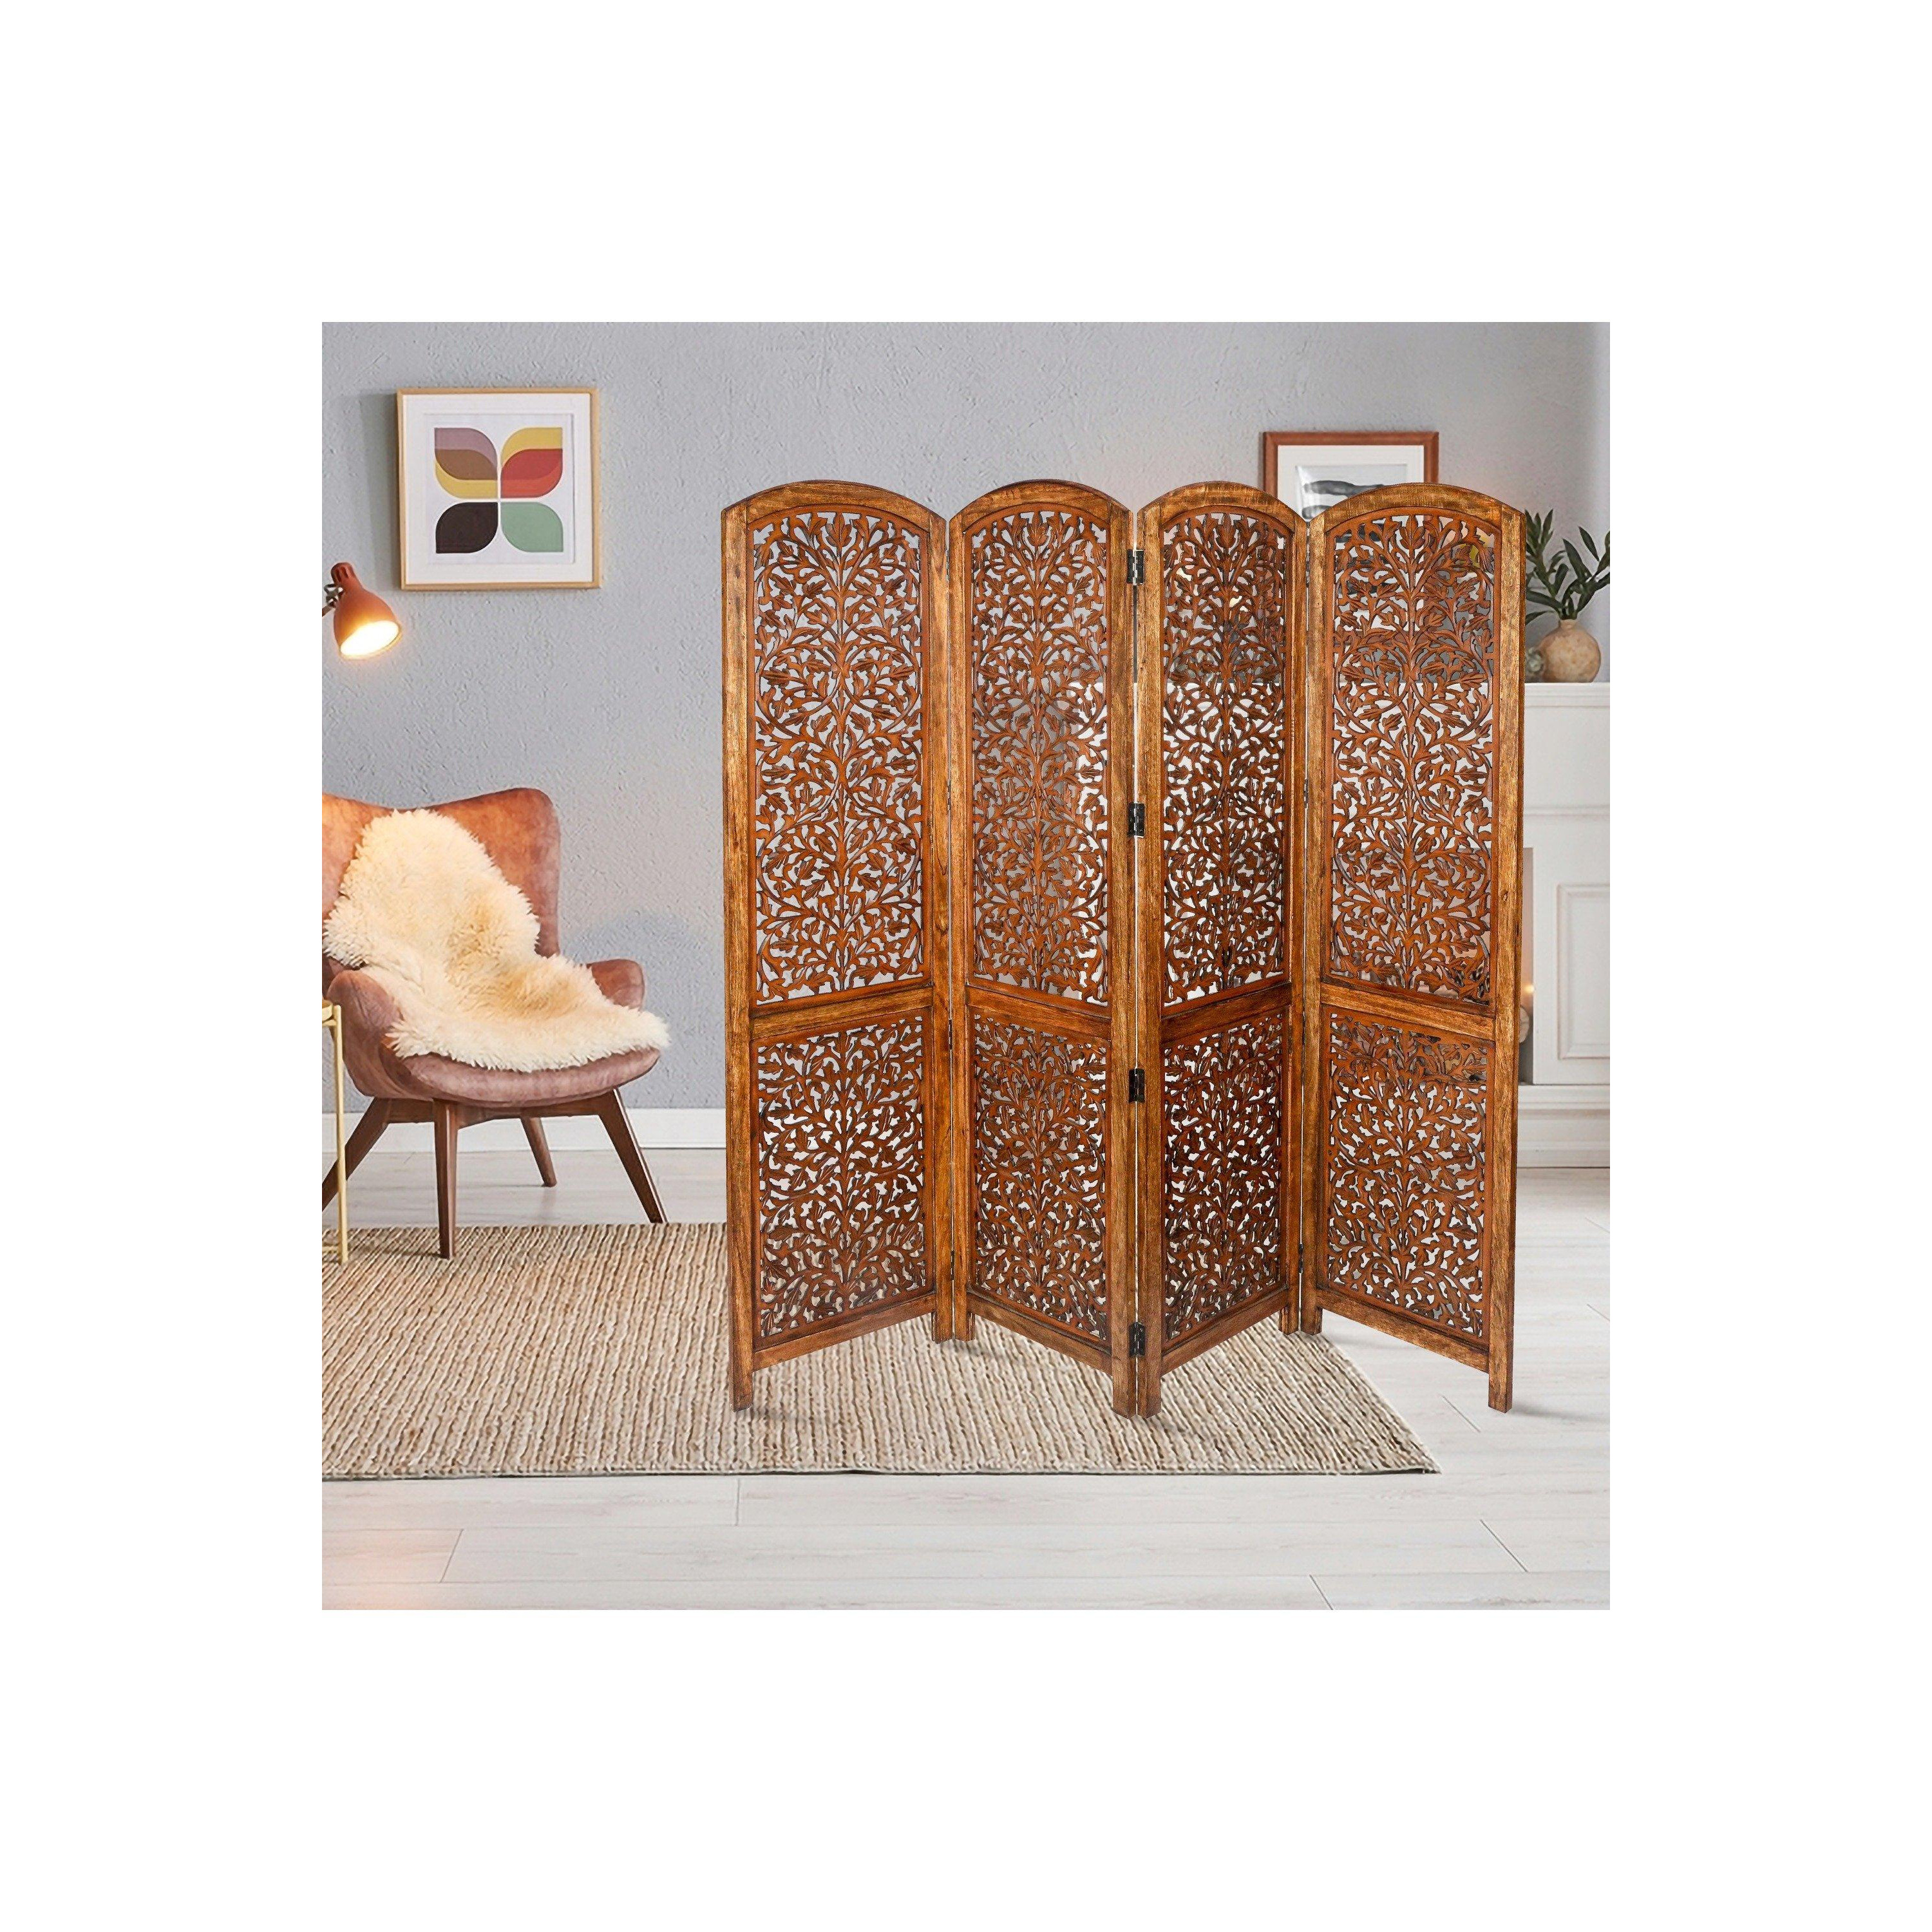 4 Panel Carved Wooden Room Divider Screen Kashmeri Design 177 x 183 cm - image 1